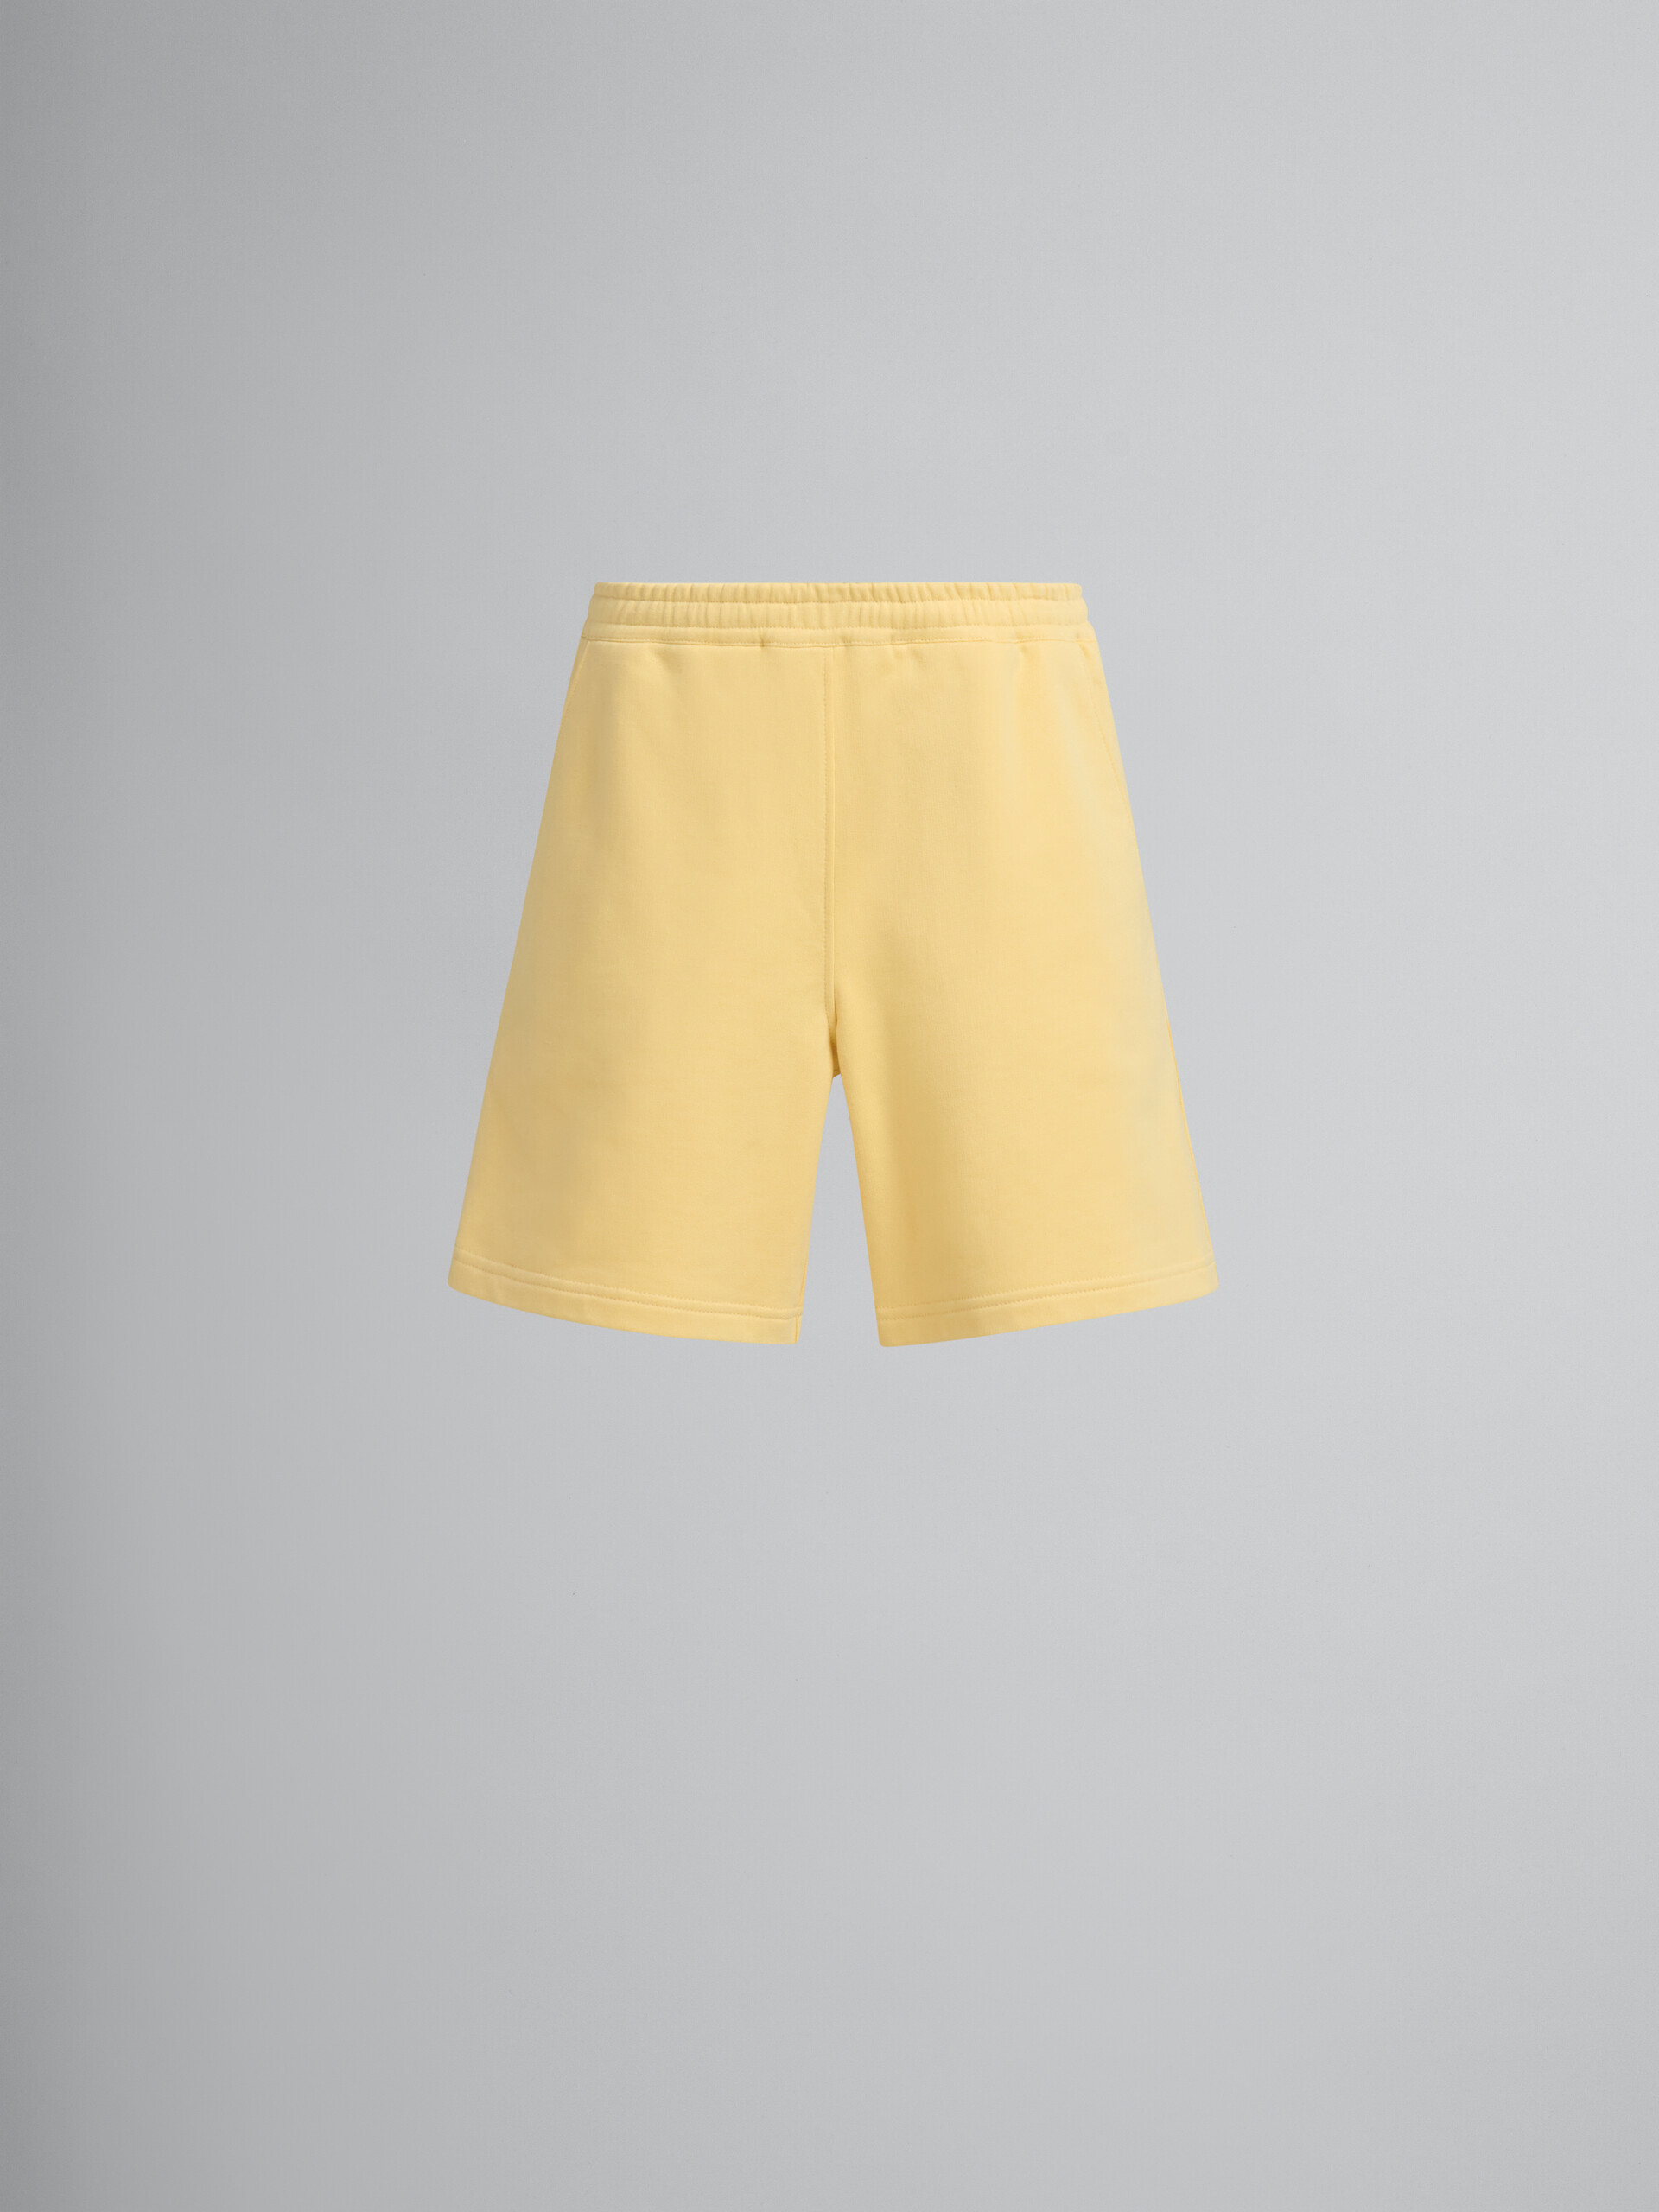 Bermudas de felpa de algodón orgánico amarillas con pespuntes Marni - Pantalones - Image 2